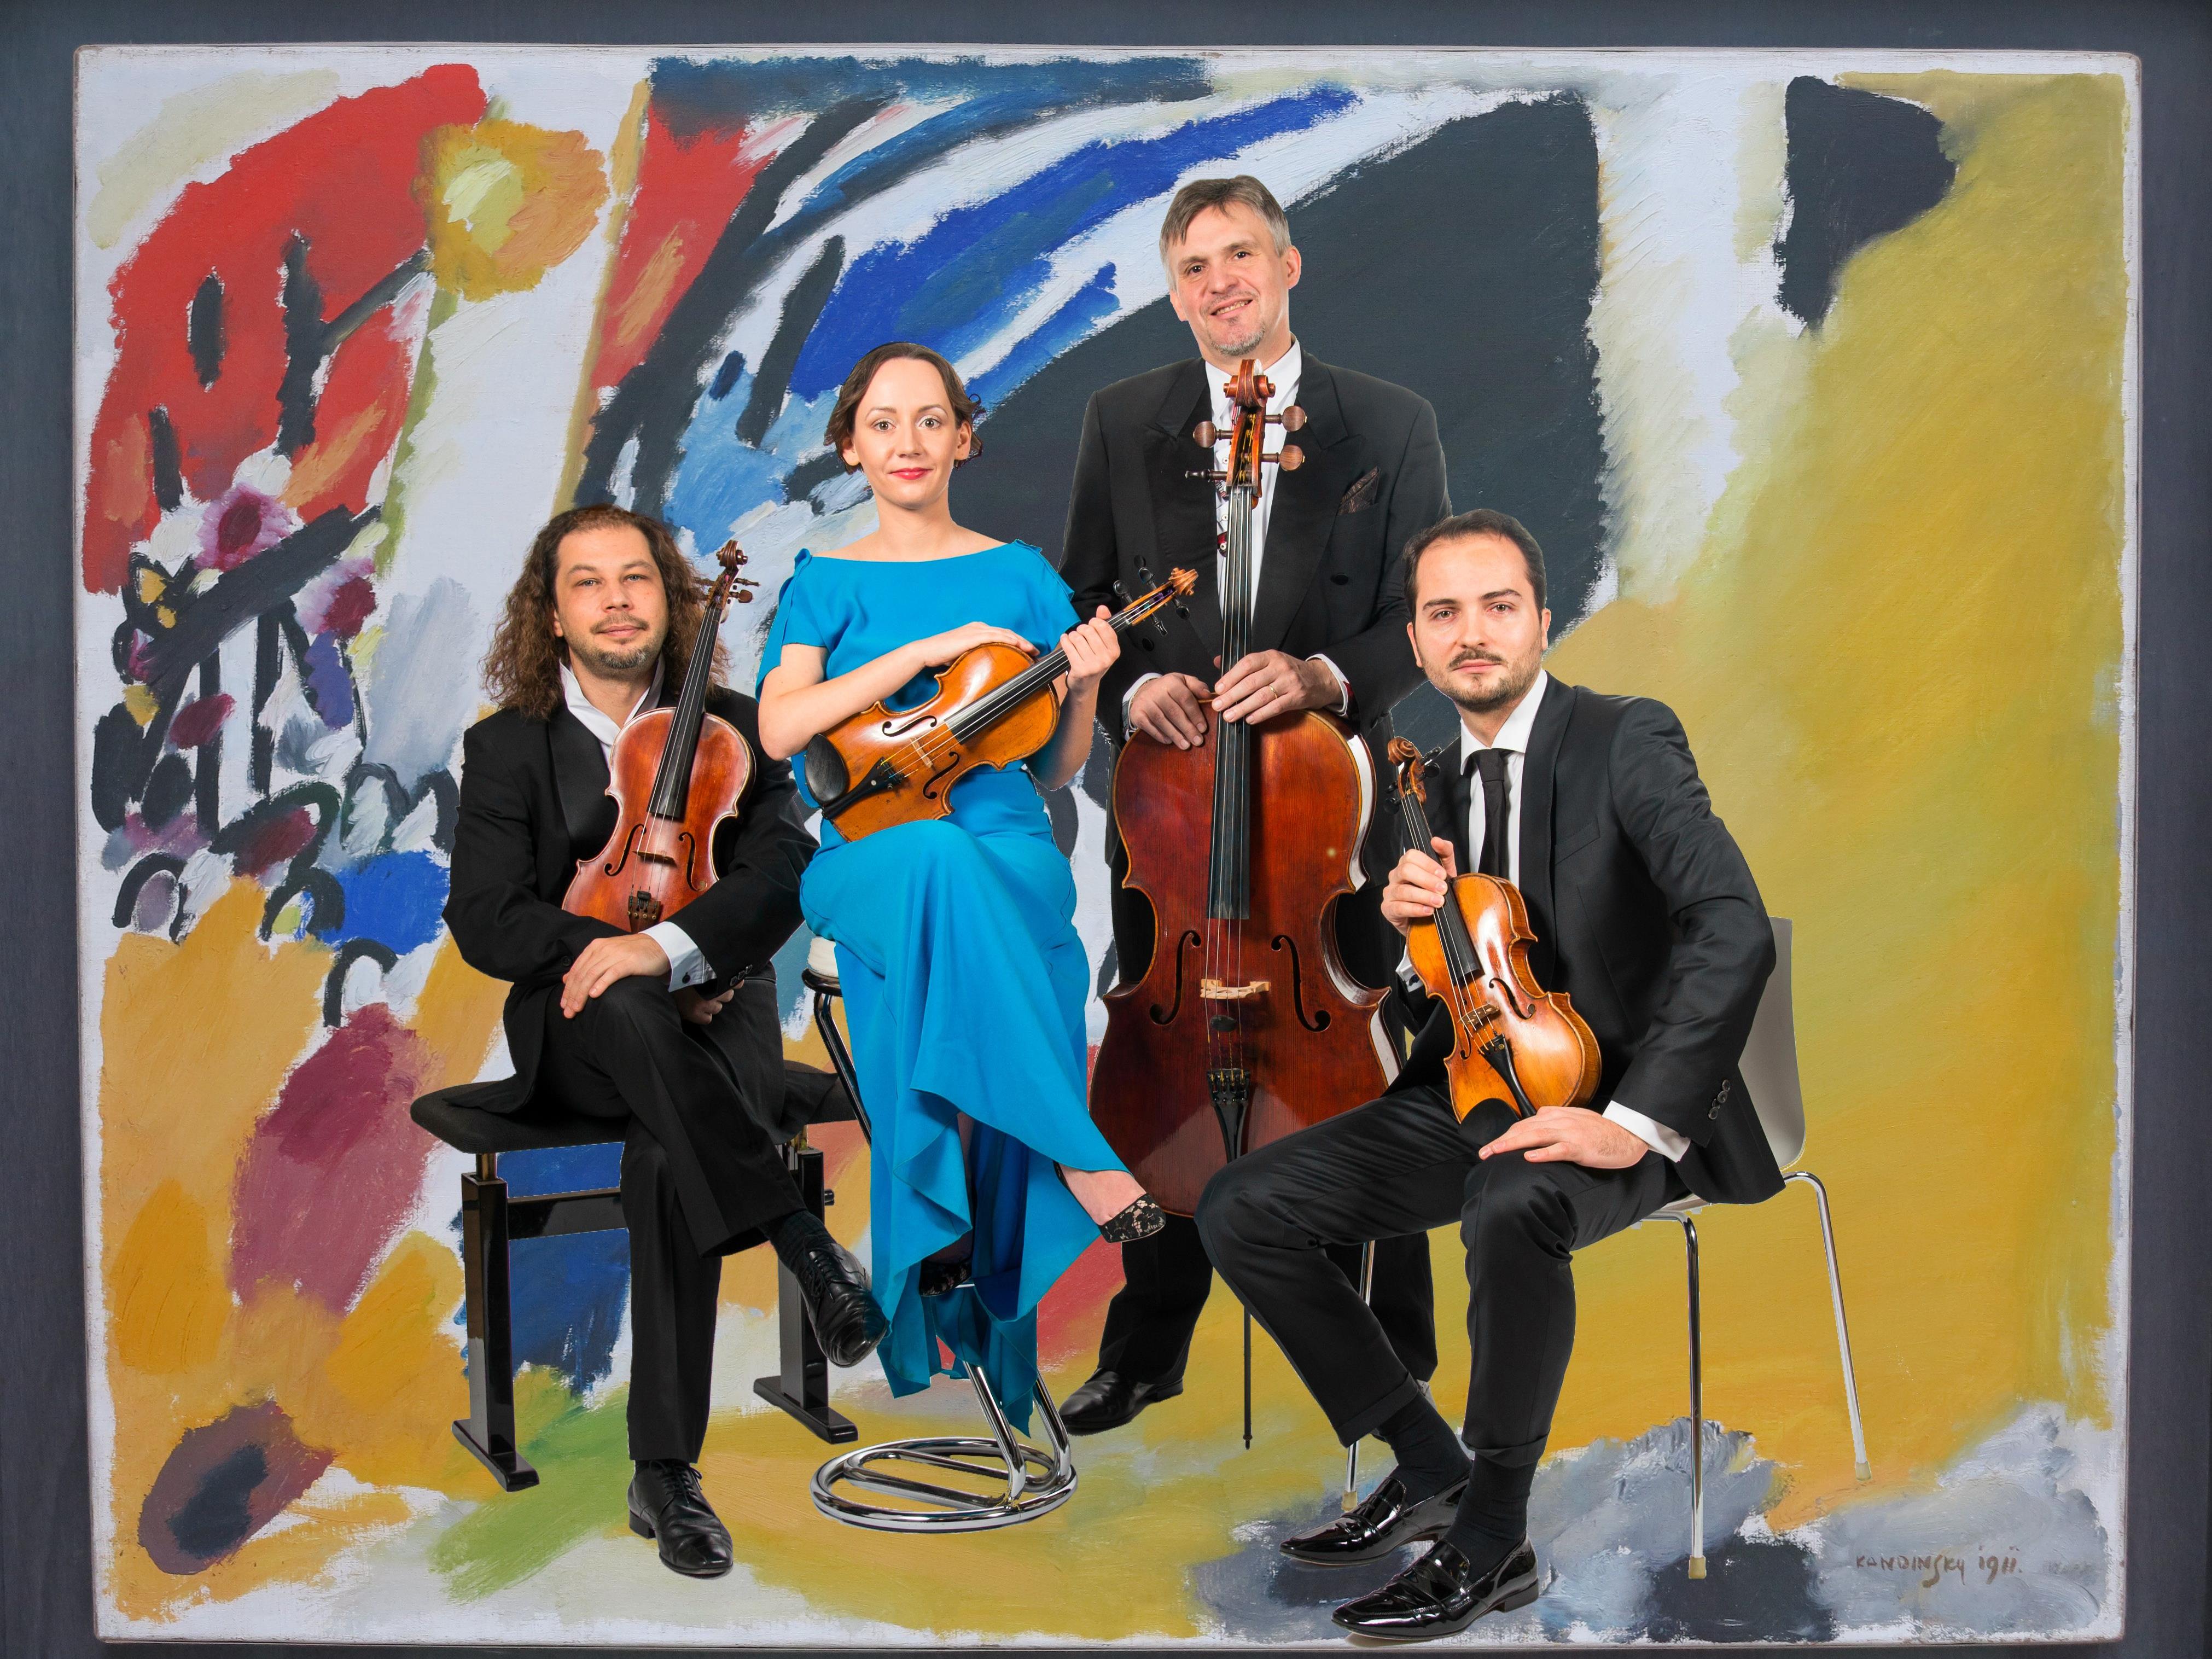 Szymanowski Quartet